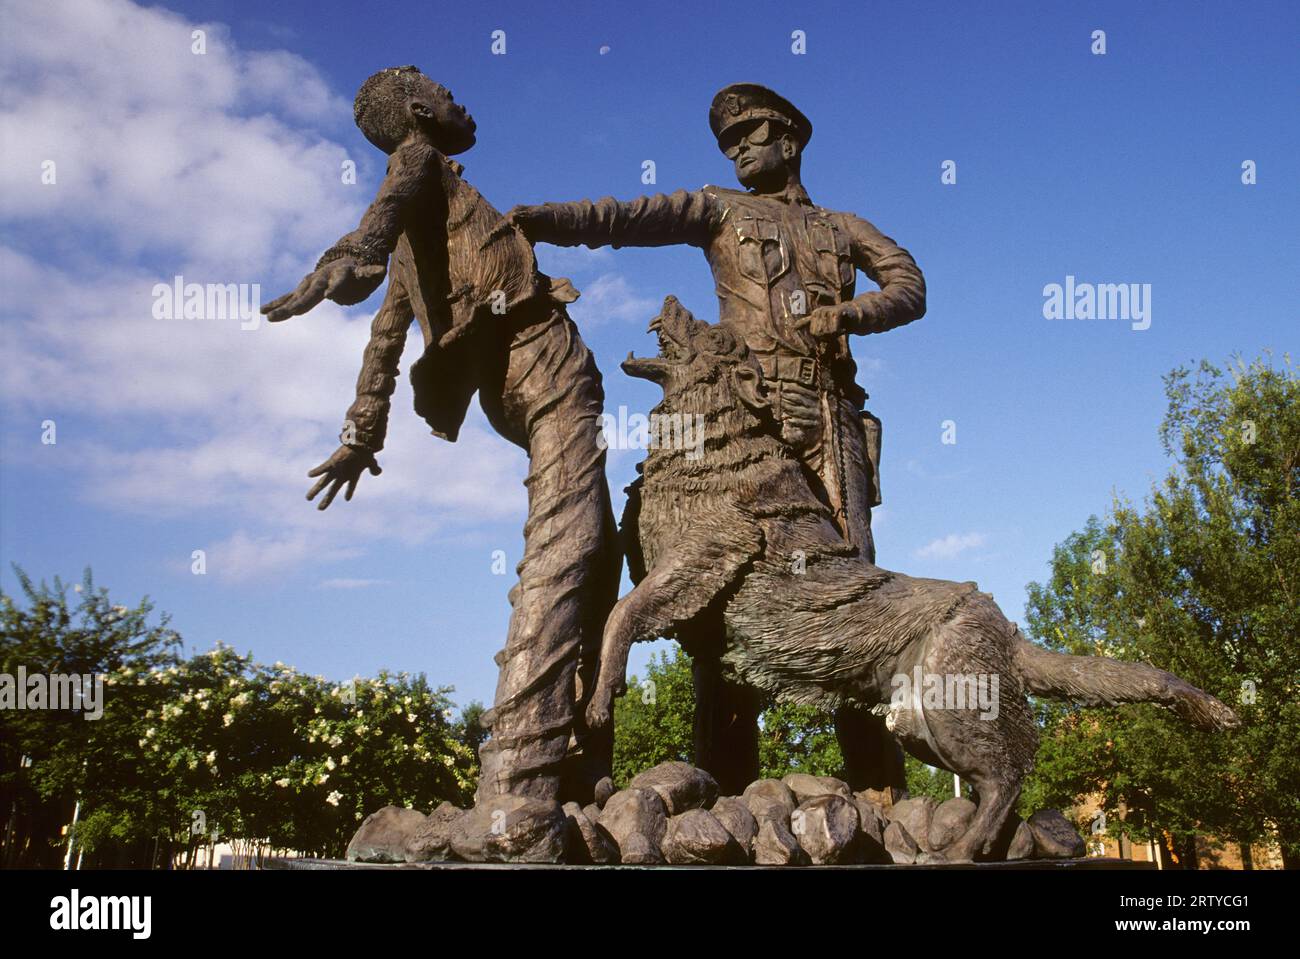 Civil Rights Fantassin sculpture, Kelly Ingram Park, Birmingham, Alabama Banque D'Images